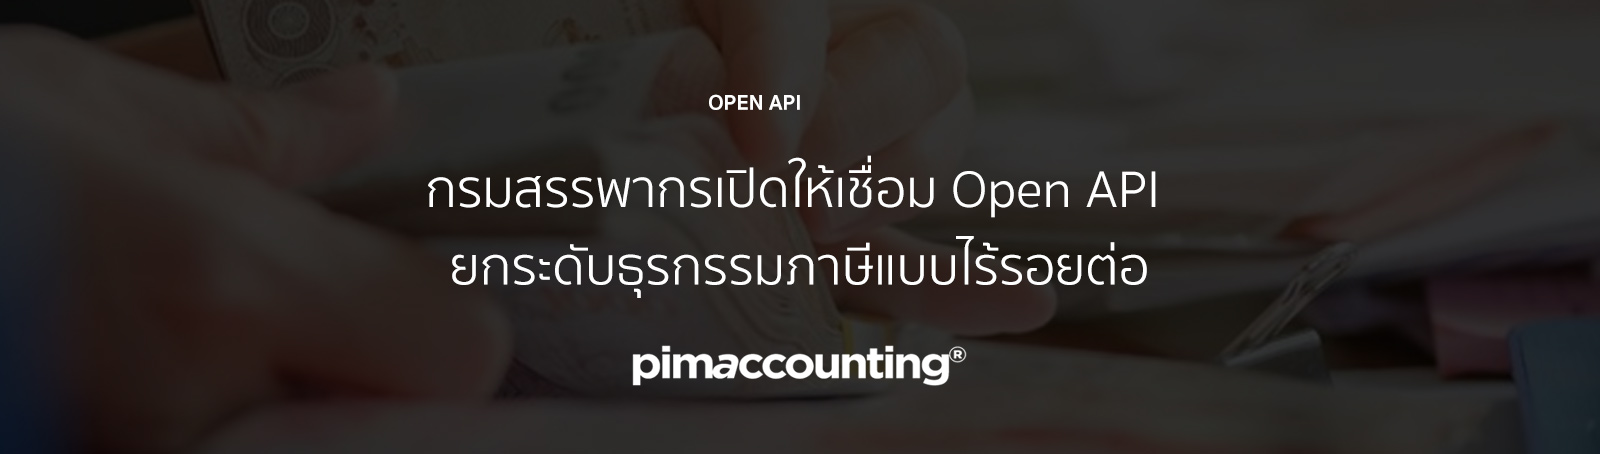 Open API ยกระดับธุรกรรมภาษีแบบไร้รอยต่อ